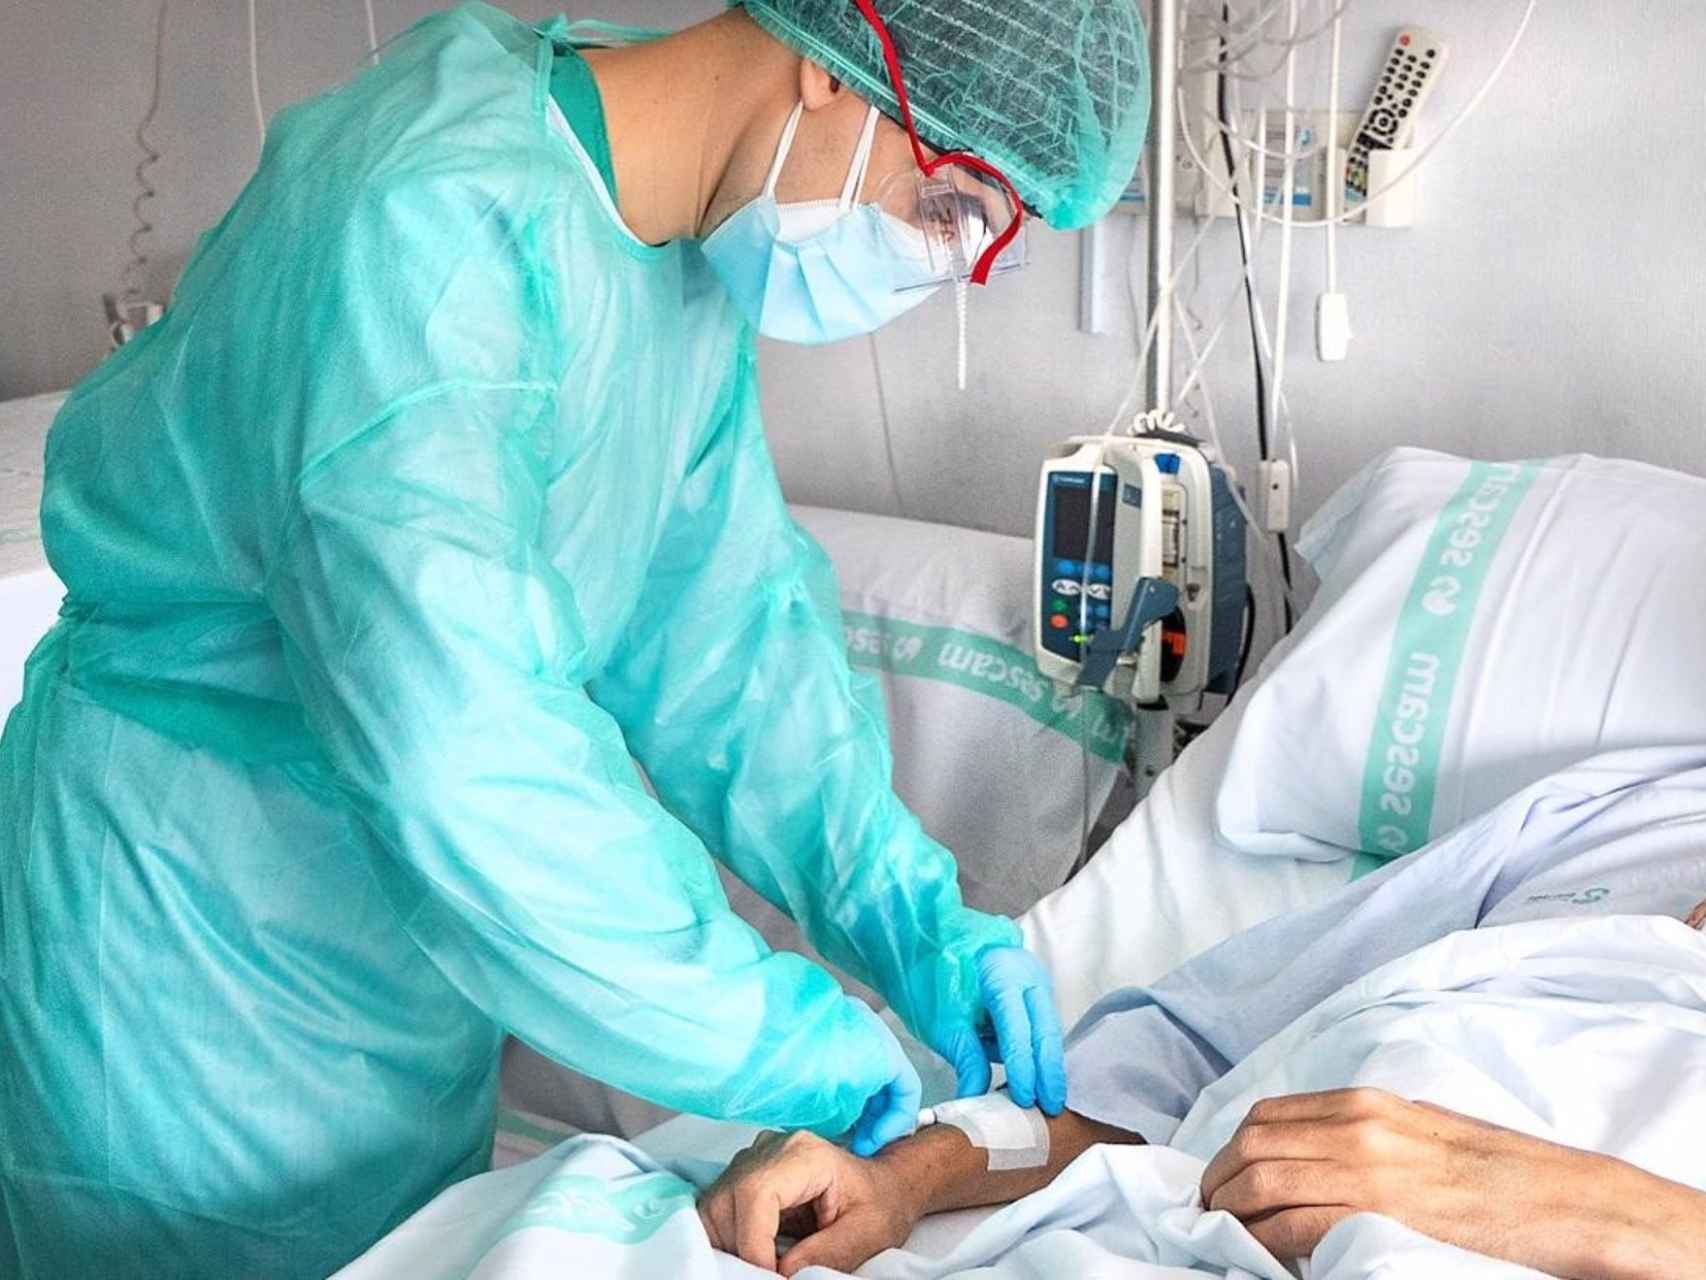 Una enfermera atiende a un paciente en un hospital.